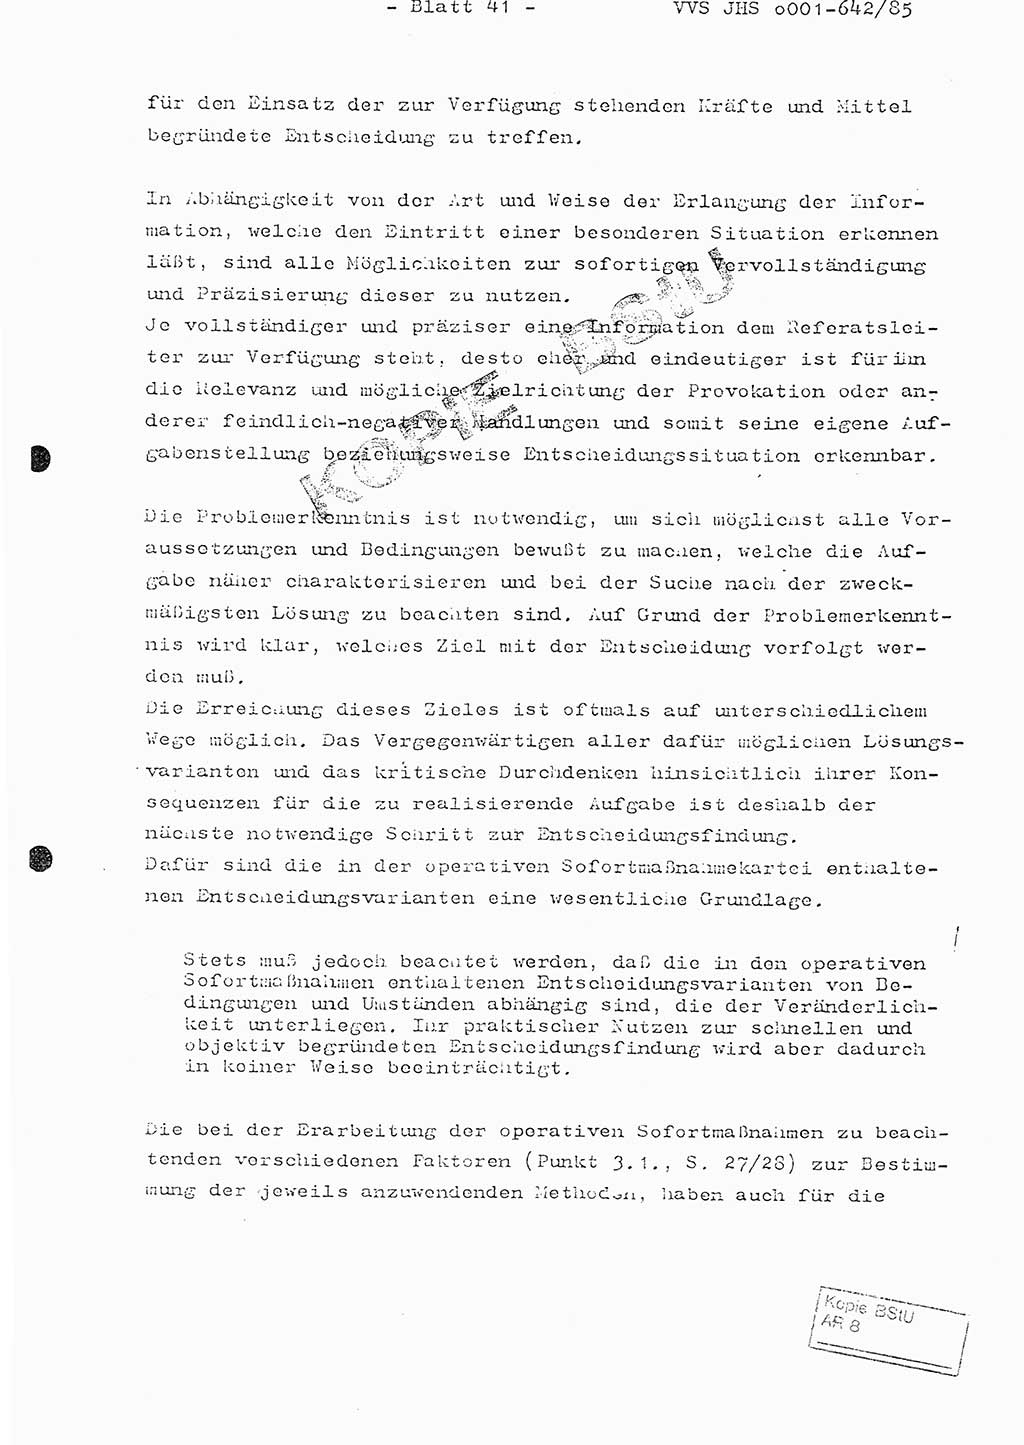 Fachschulabschlußarbeit Oberleutnant Lothar Fahland (Abt. ⅩⅣ), Ministerium für Staatssicherheit (MfS) [Deutsche Demokratische Republik (DDR)], Juristische Hochschule (JHS), Vertrauliche Verschlußsache (VVS) o001-642/85, Potsdam 1985, Blatt 41 (FS-Abschl.-Arb. MfS DDR JHS VVS o001-642/85 1985, Bl. 41)